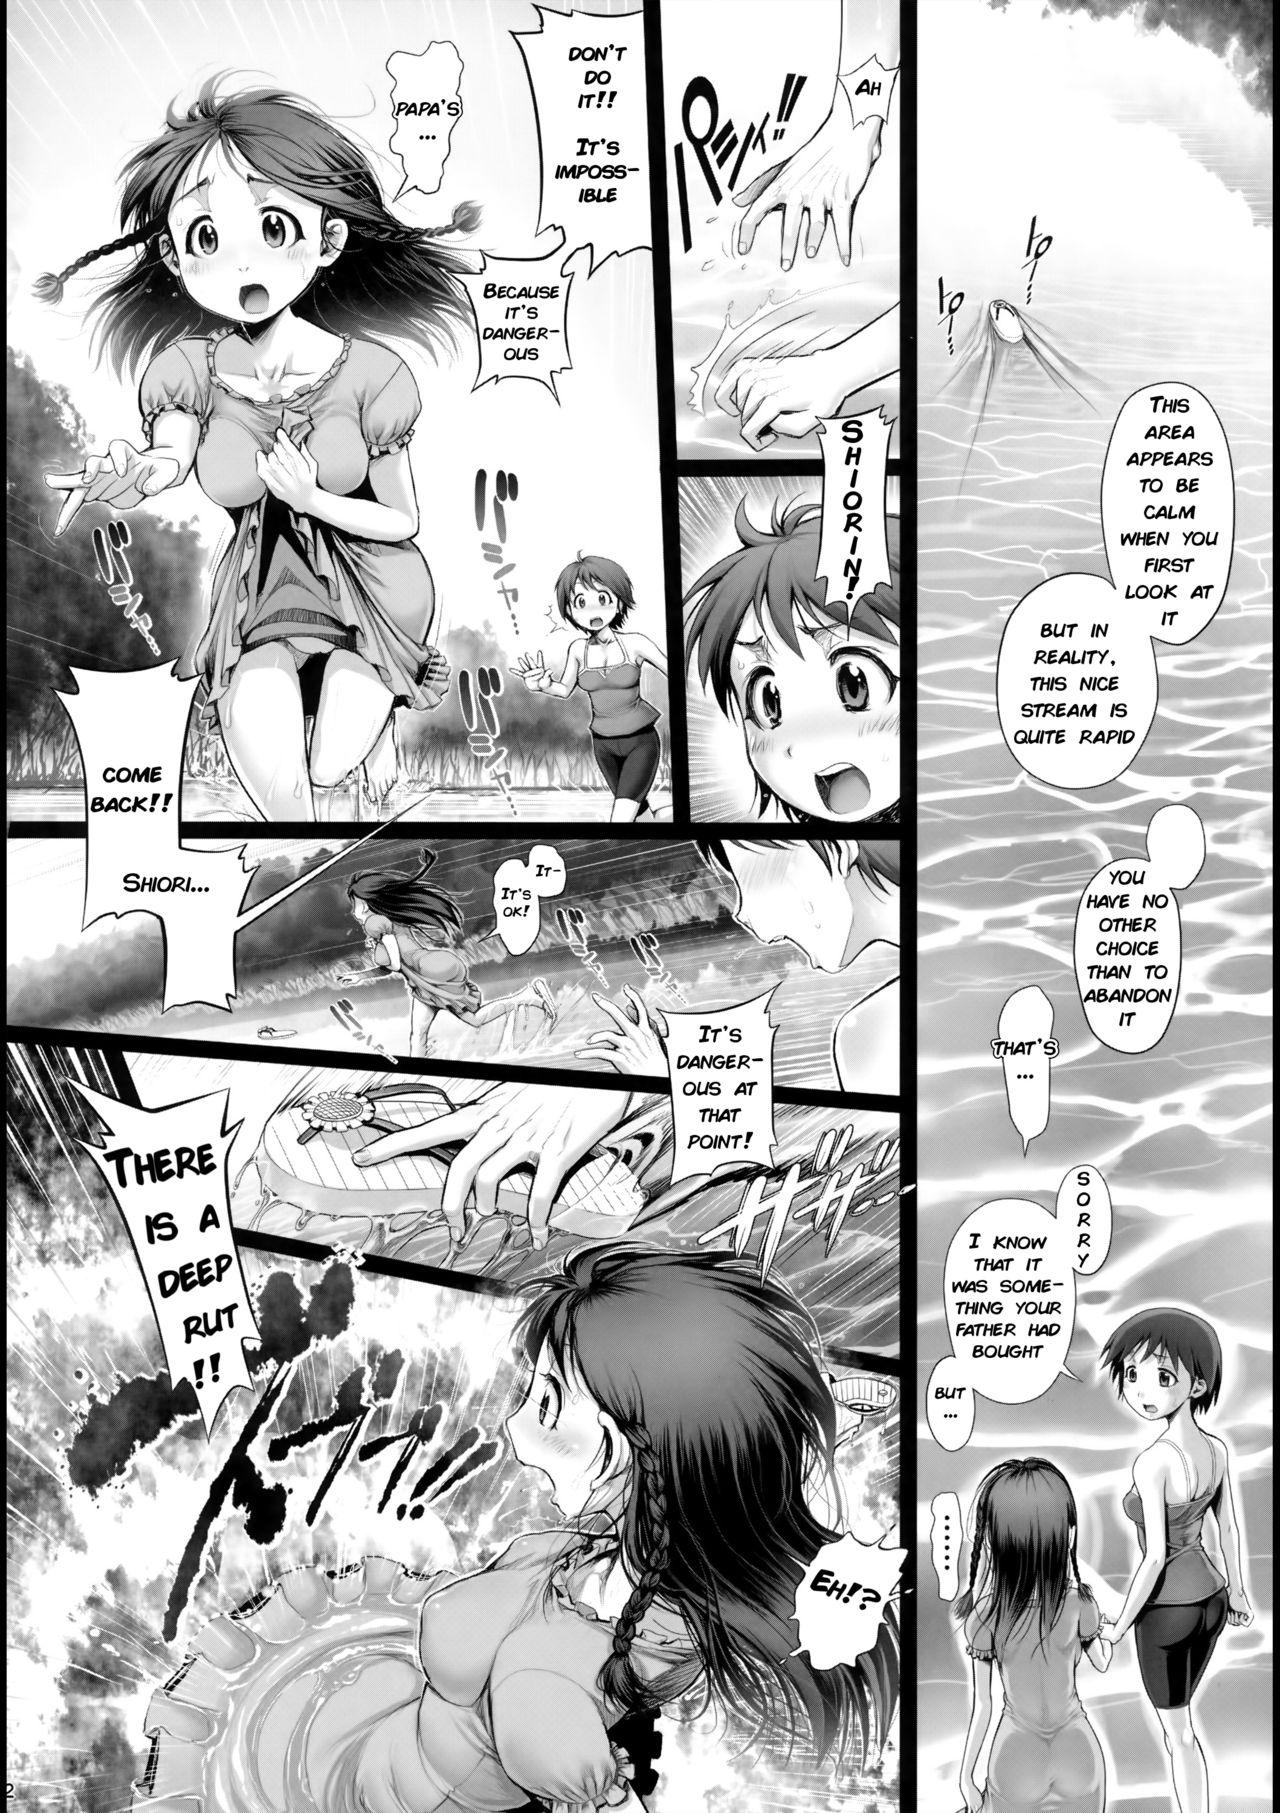 France Angel Crisis 3 - Shizukana Kohan no Mori no Kage kara - Original Bubble - Page 3